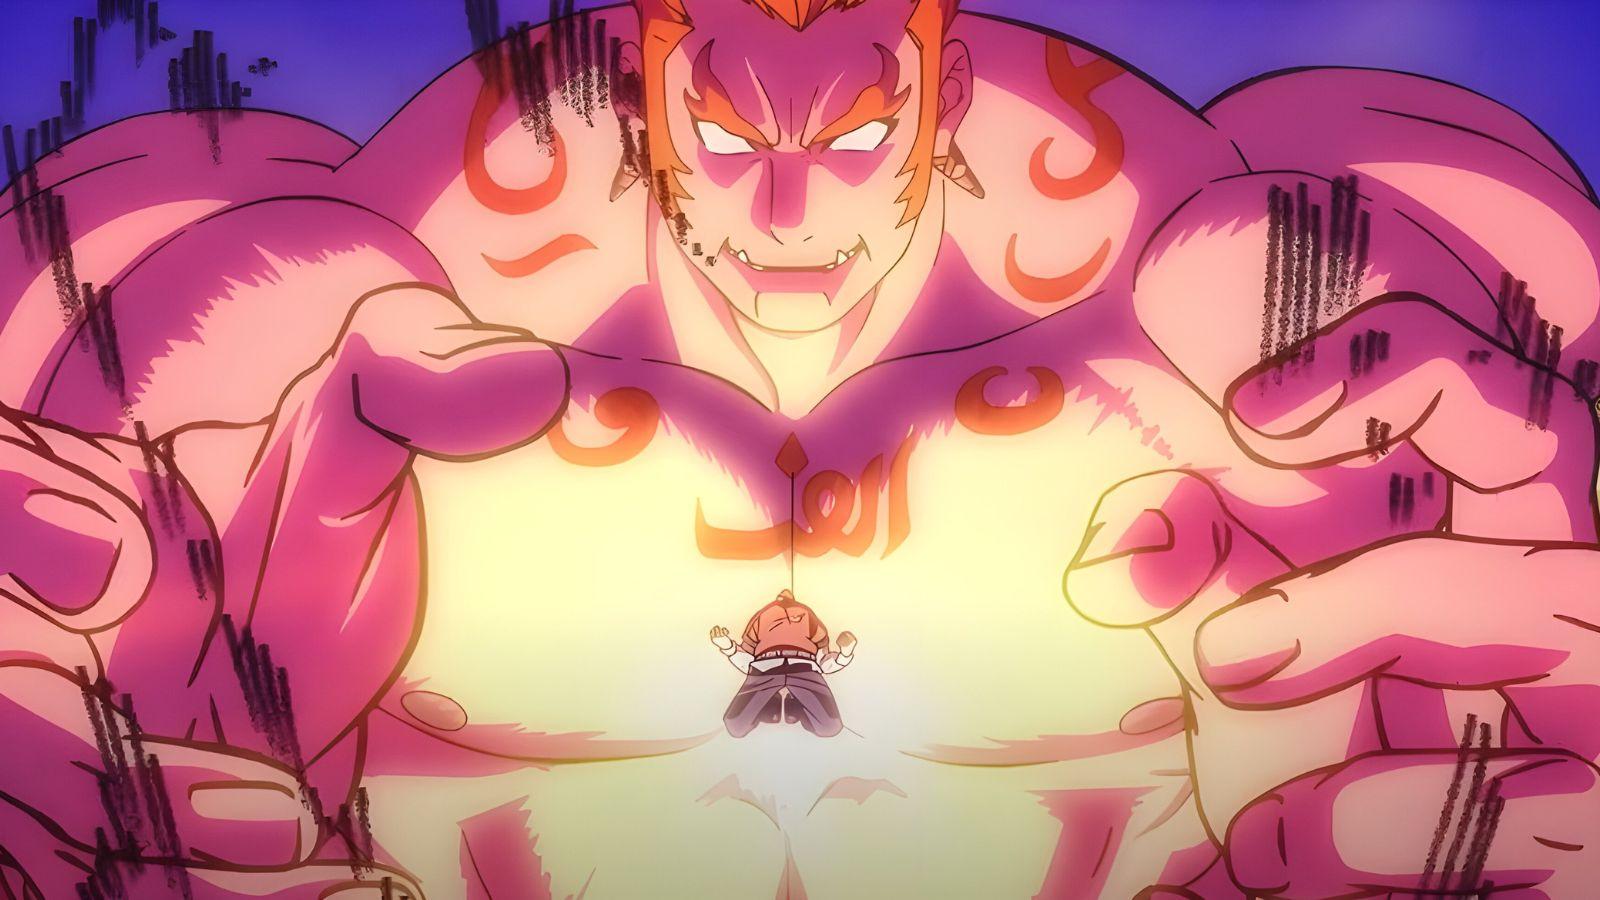 Mappa's original anime Bucchigiri?! reveals character visuals